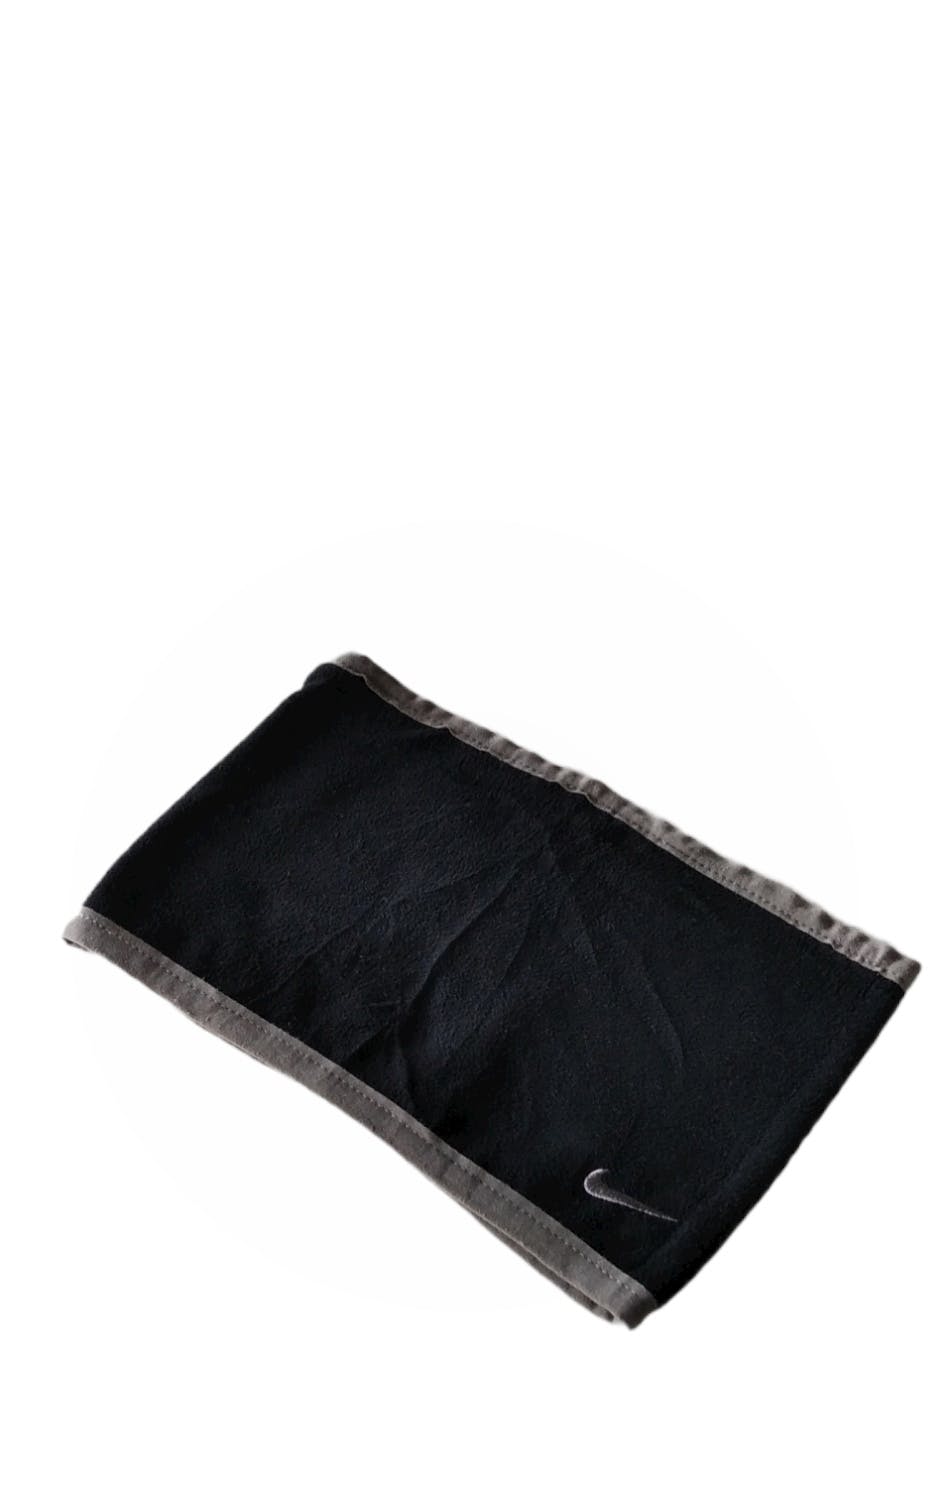 Headband Nike Swoosh &Nike Reversible Fleece Neck Warmer - 7